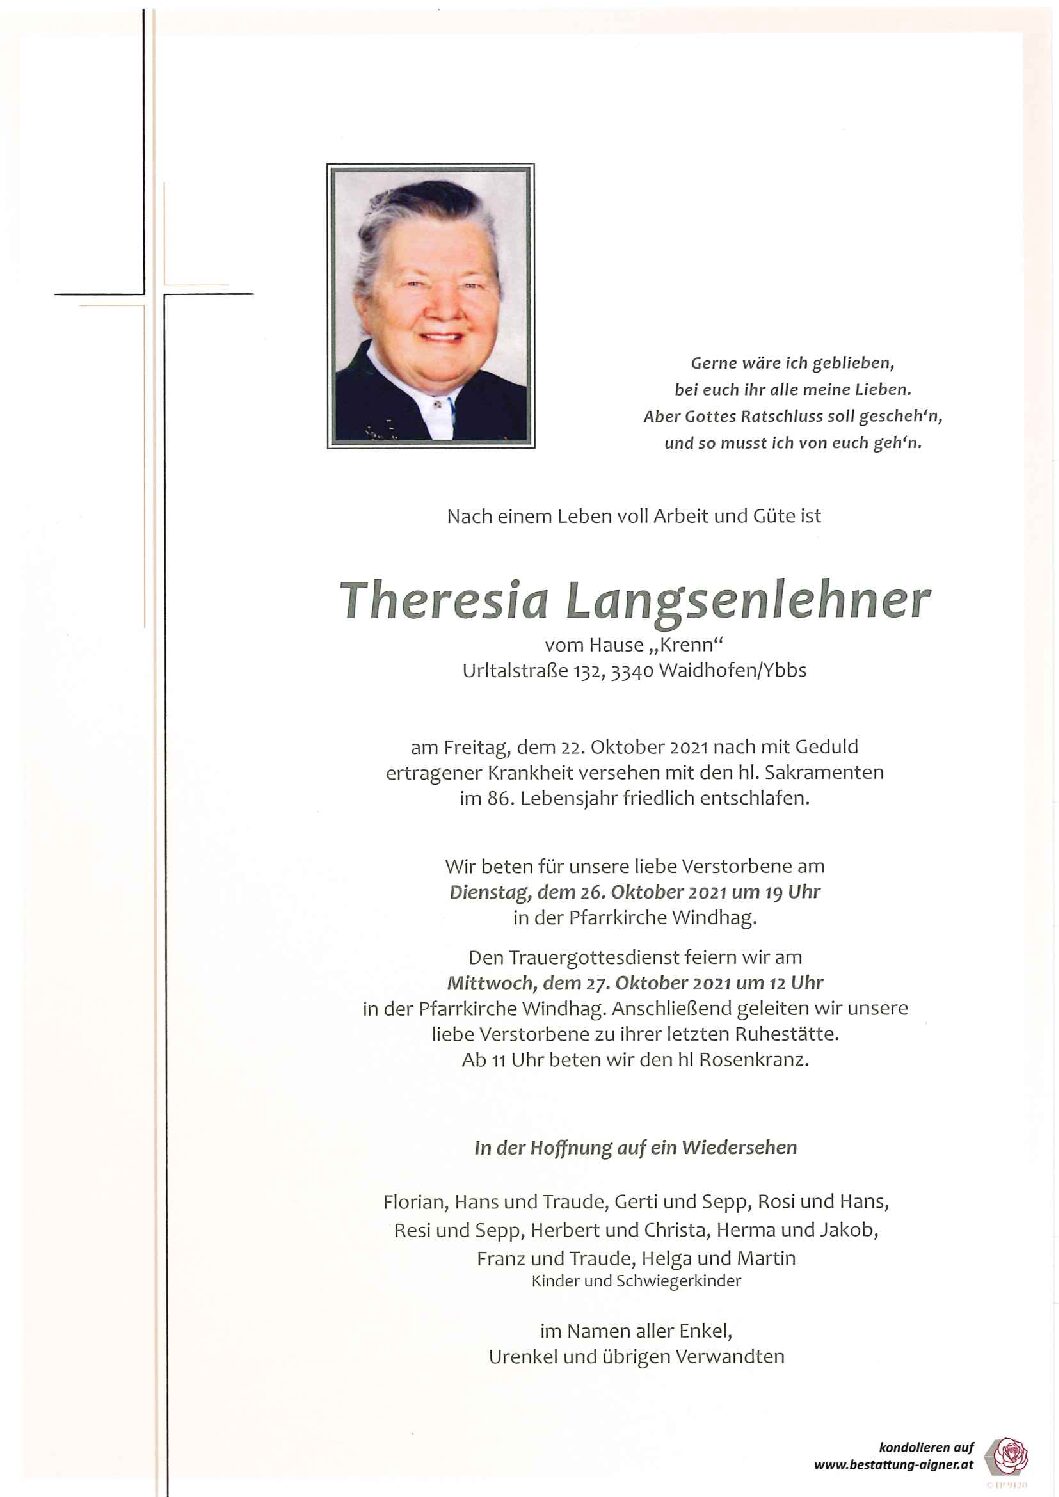 Theresia Langsenlehner